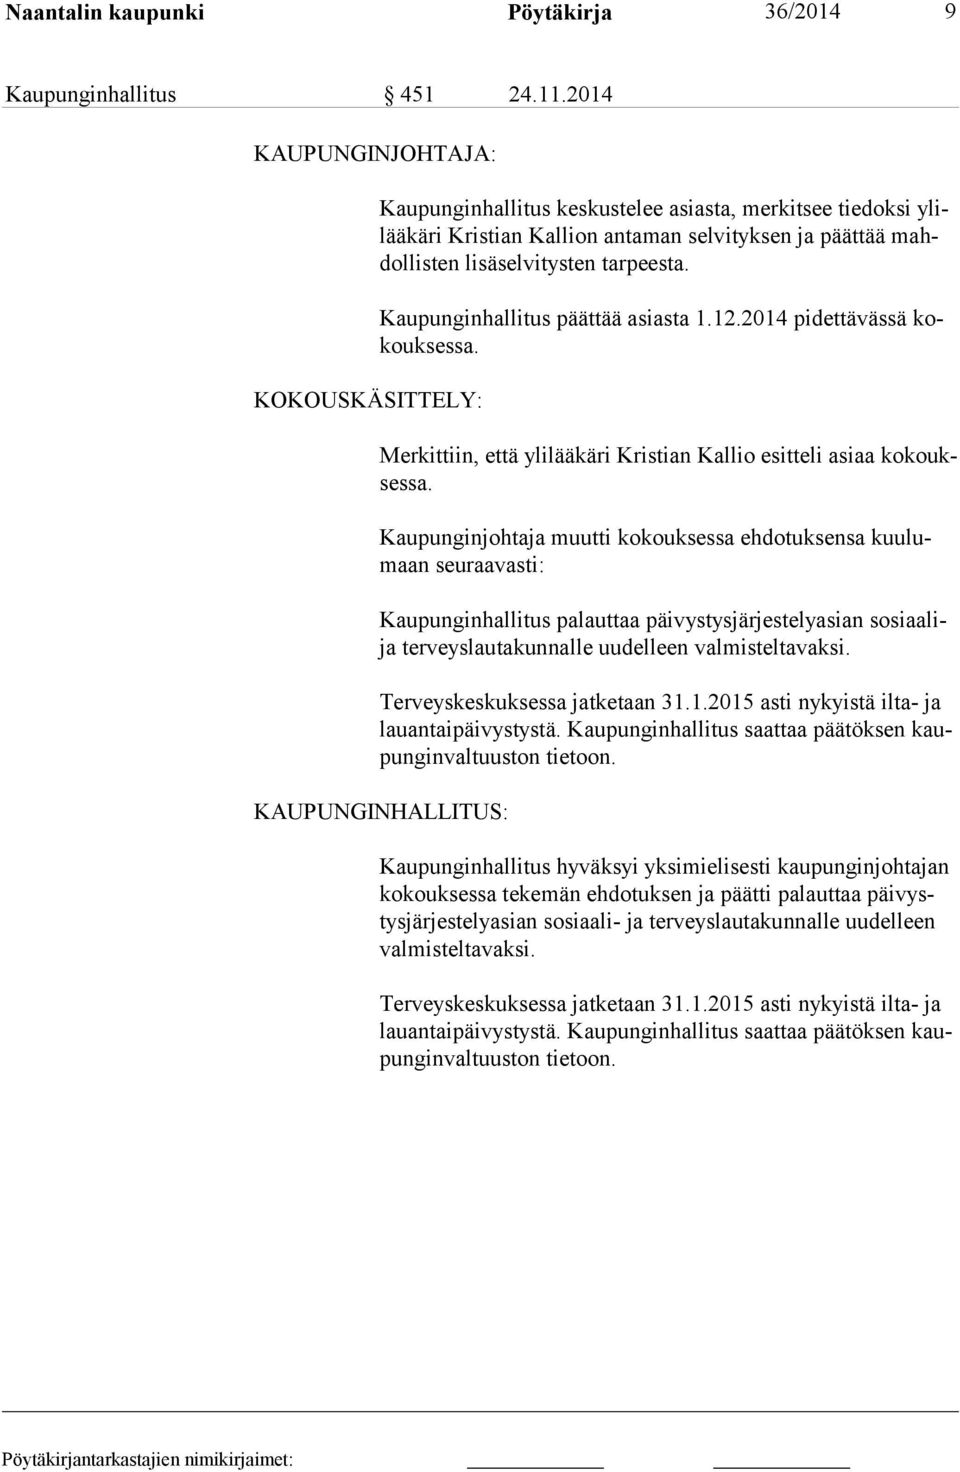 Kaupunginhallitus päättää asiasta 1.12.2014 pidettävässä kokouksessa. Merkittiin, että ylilääkäri Kristian Kallio esitteli asiaa kokouksessa.